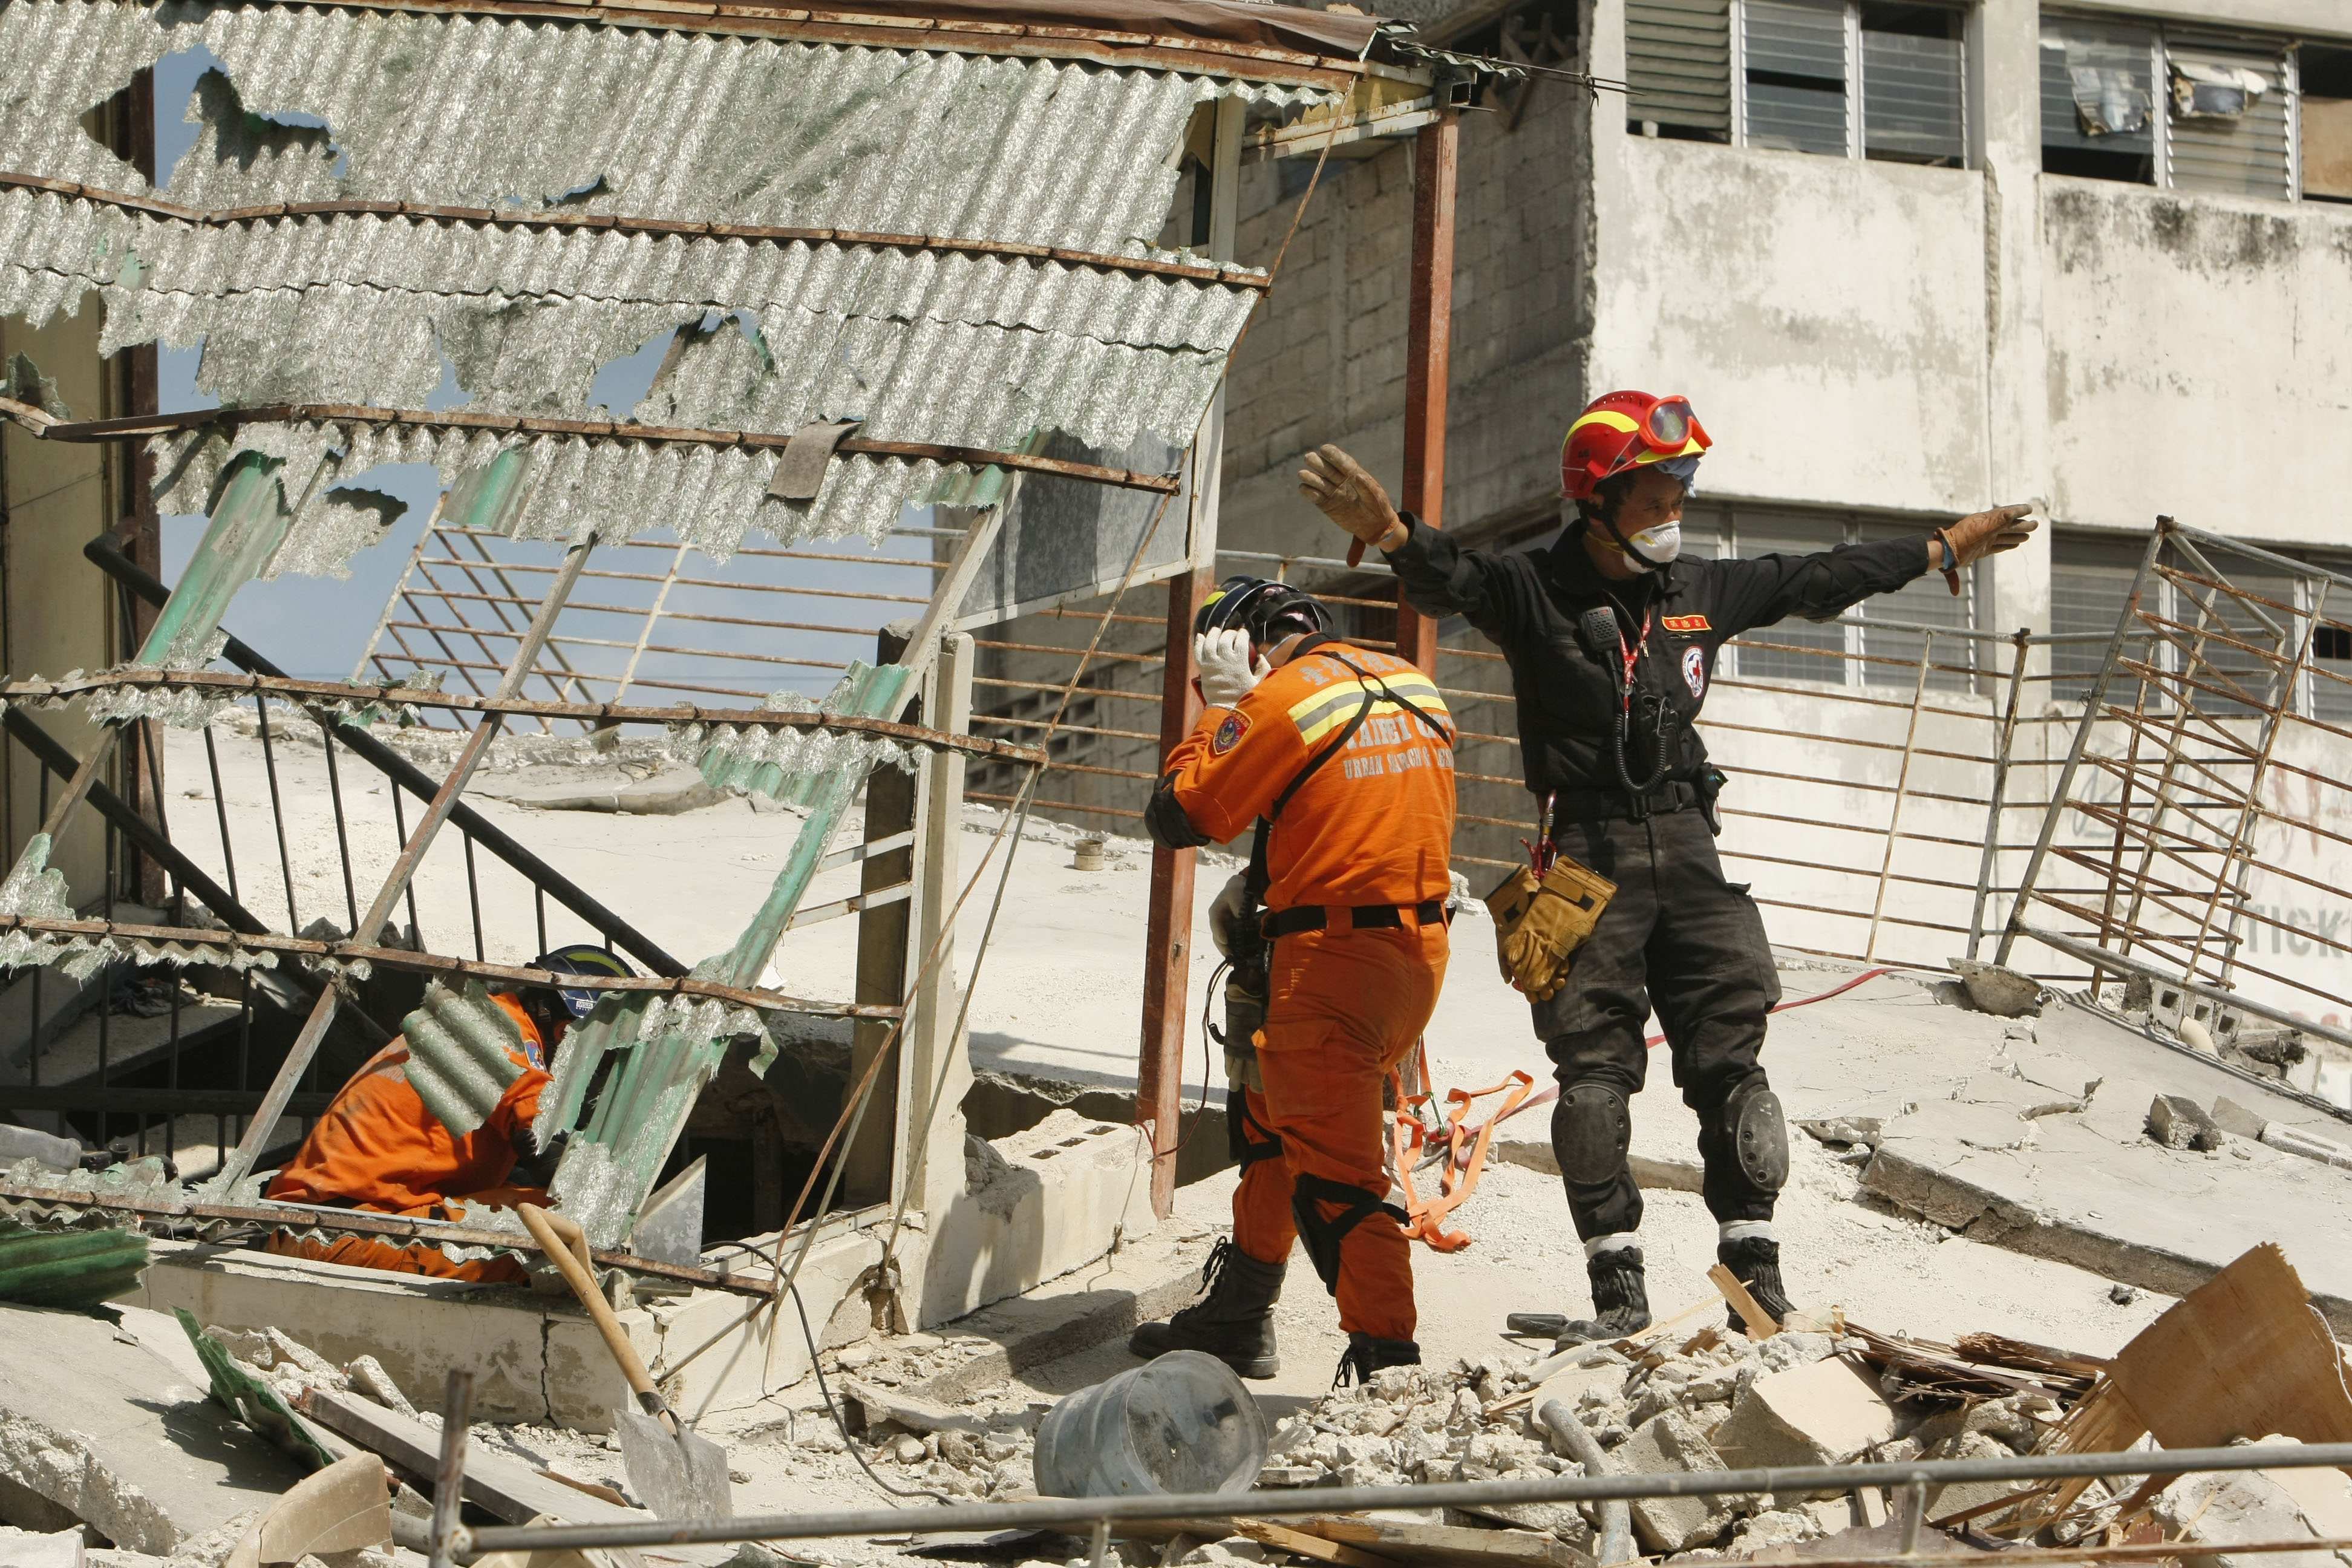 Medarbetare vid taiwanesiska Röda korset avslutar räddningsarbetet för dagen. Men hjälpinsatserna i Haiti får skarp kritik.